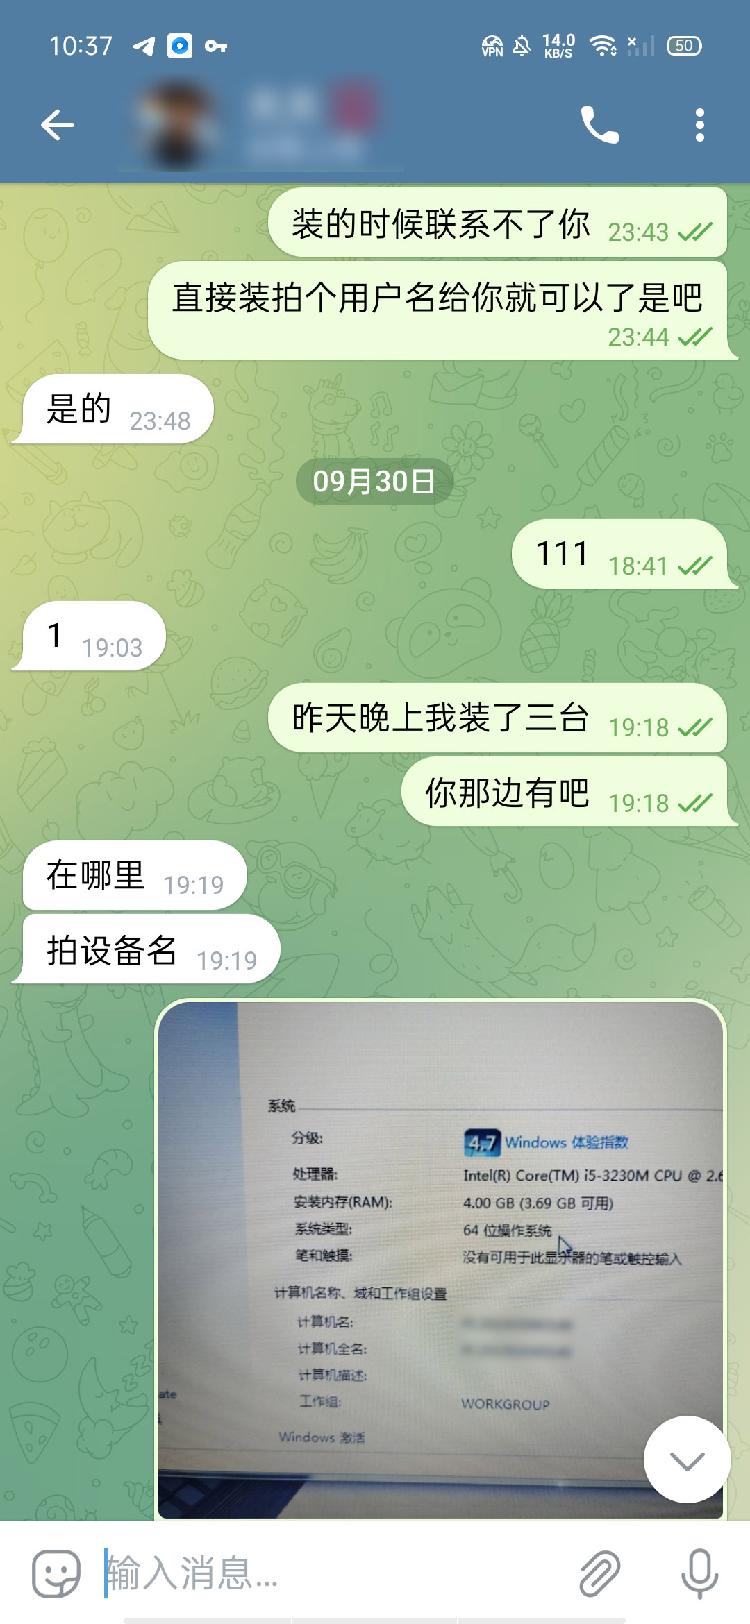 上海现新型盗取公民信息案 物流公司电脑竟被植入木马